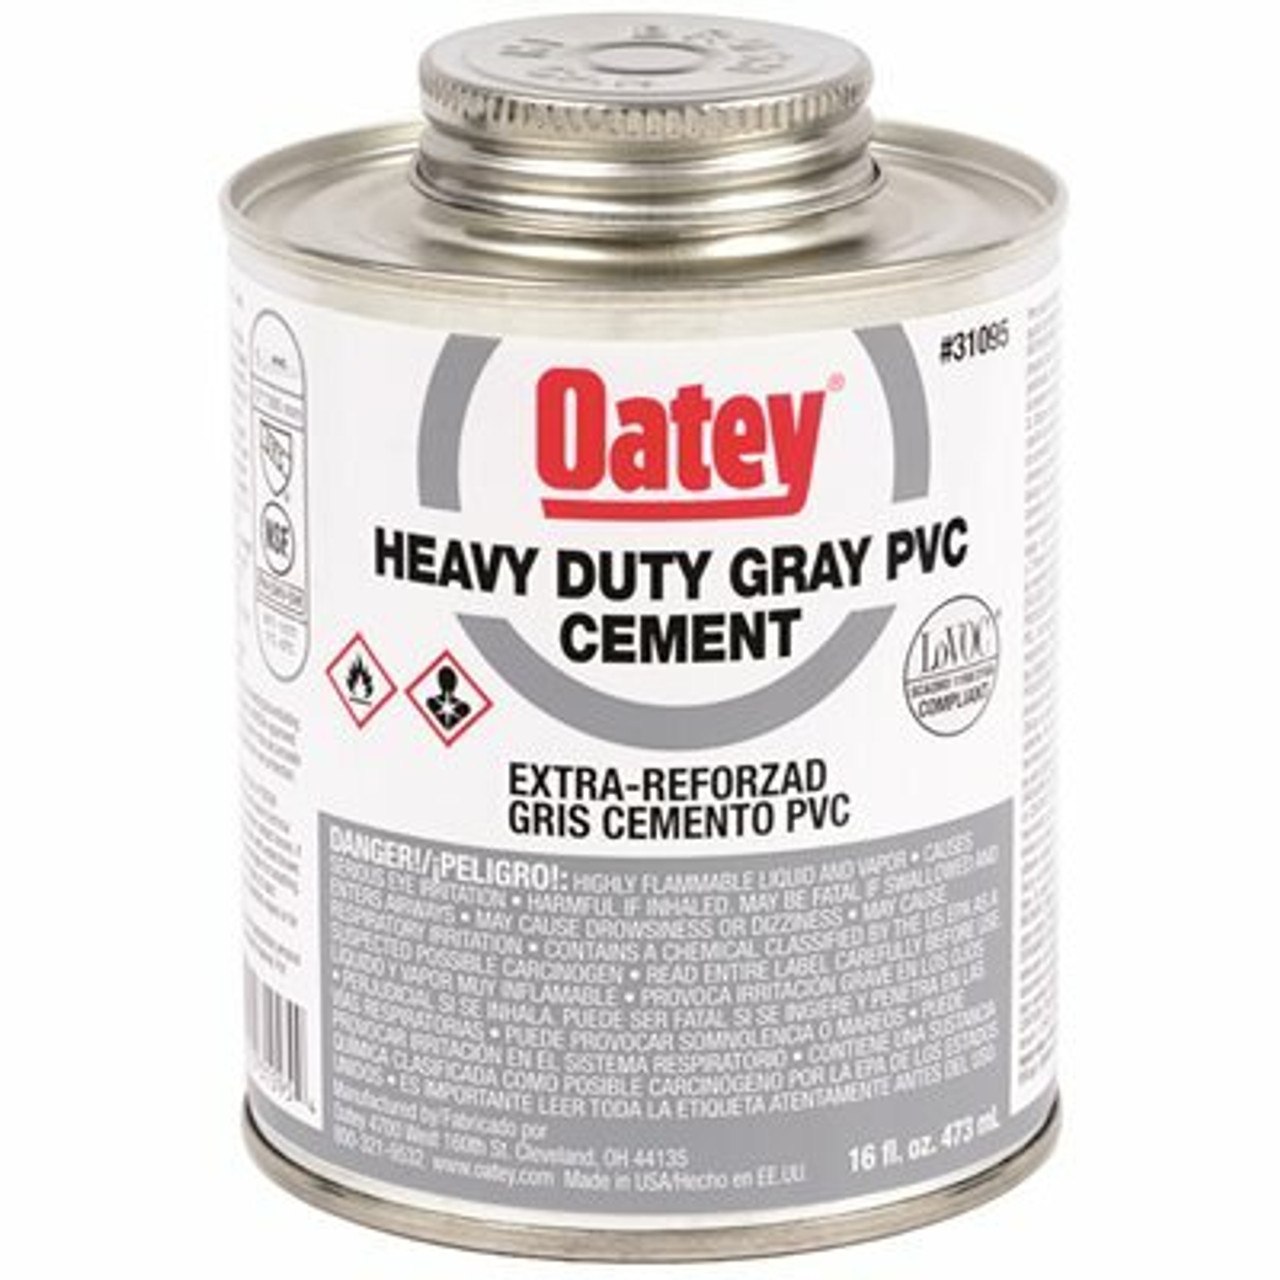 Oatey 8 Oz. Gray Pvc Heavy Duty Cement